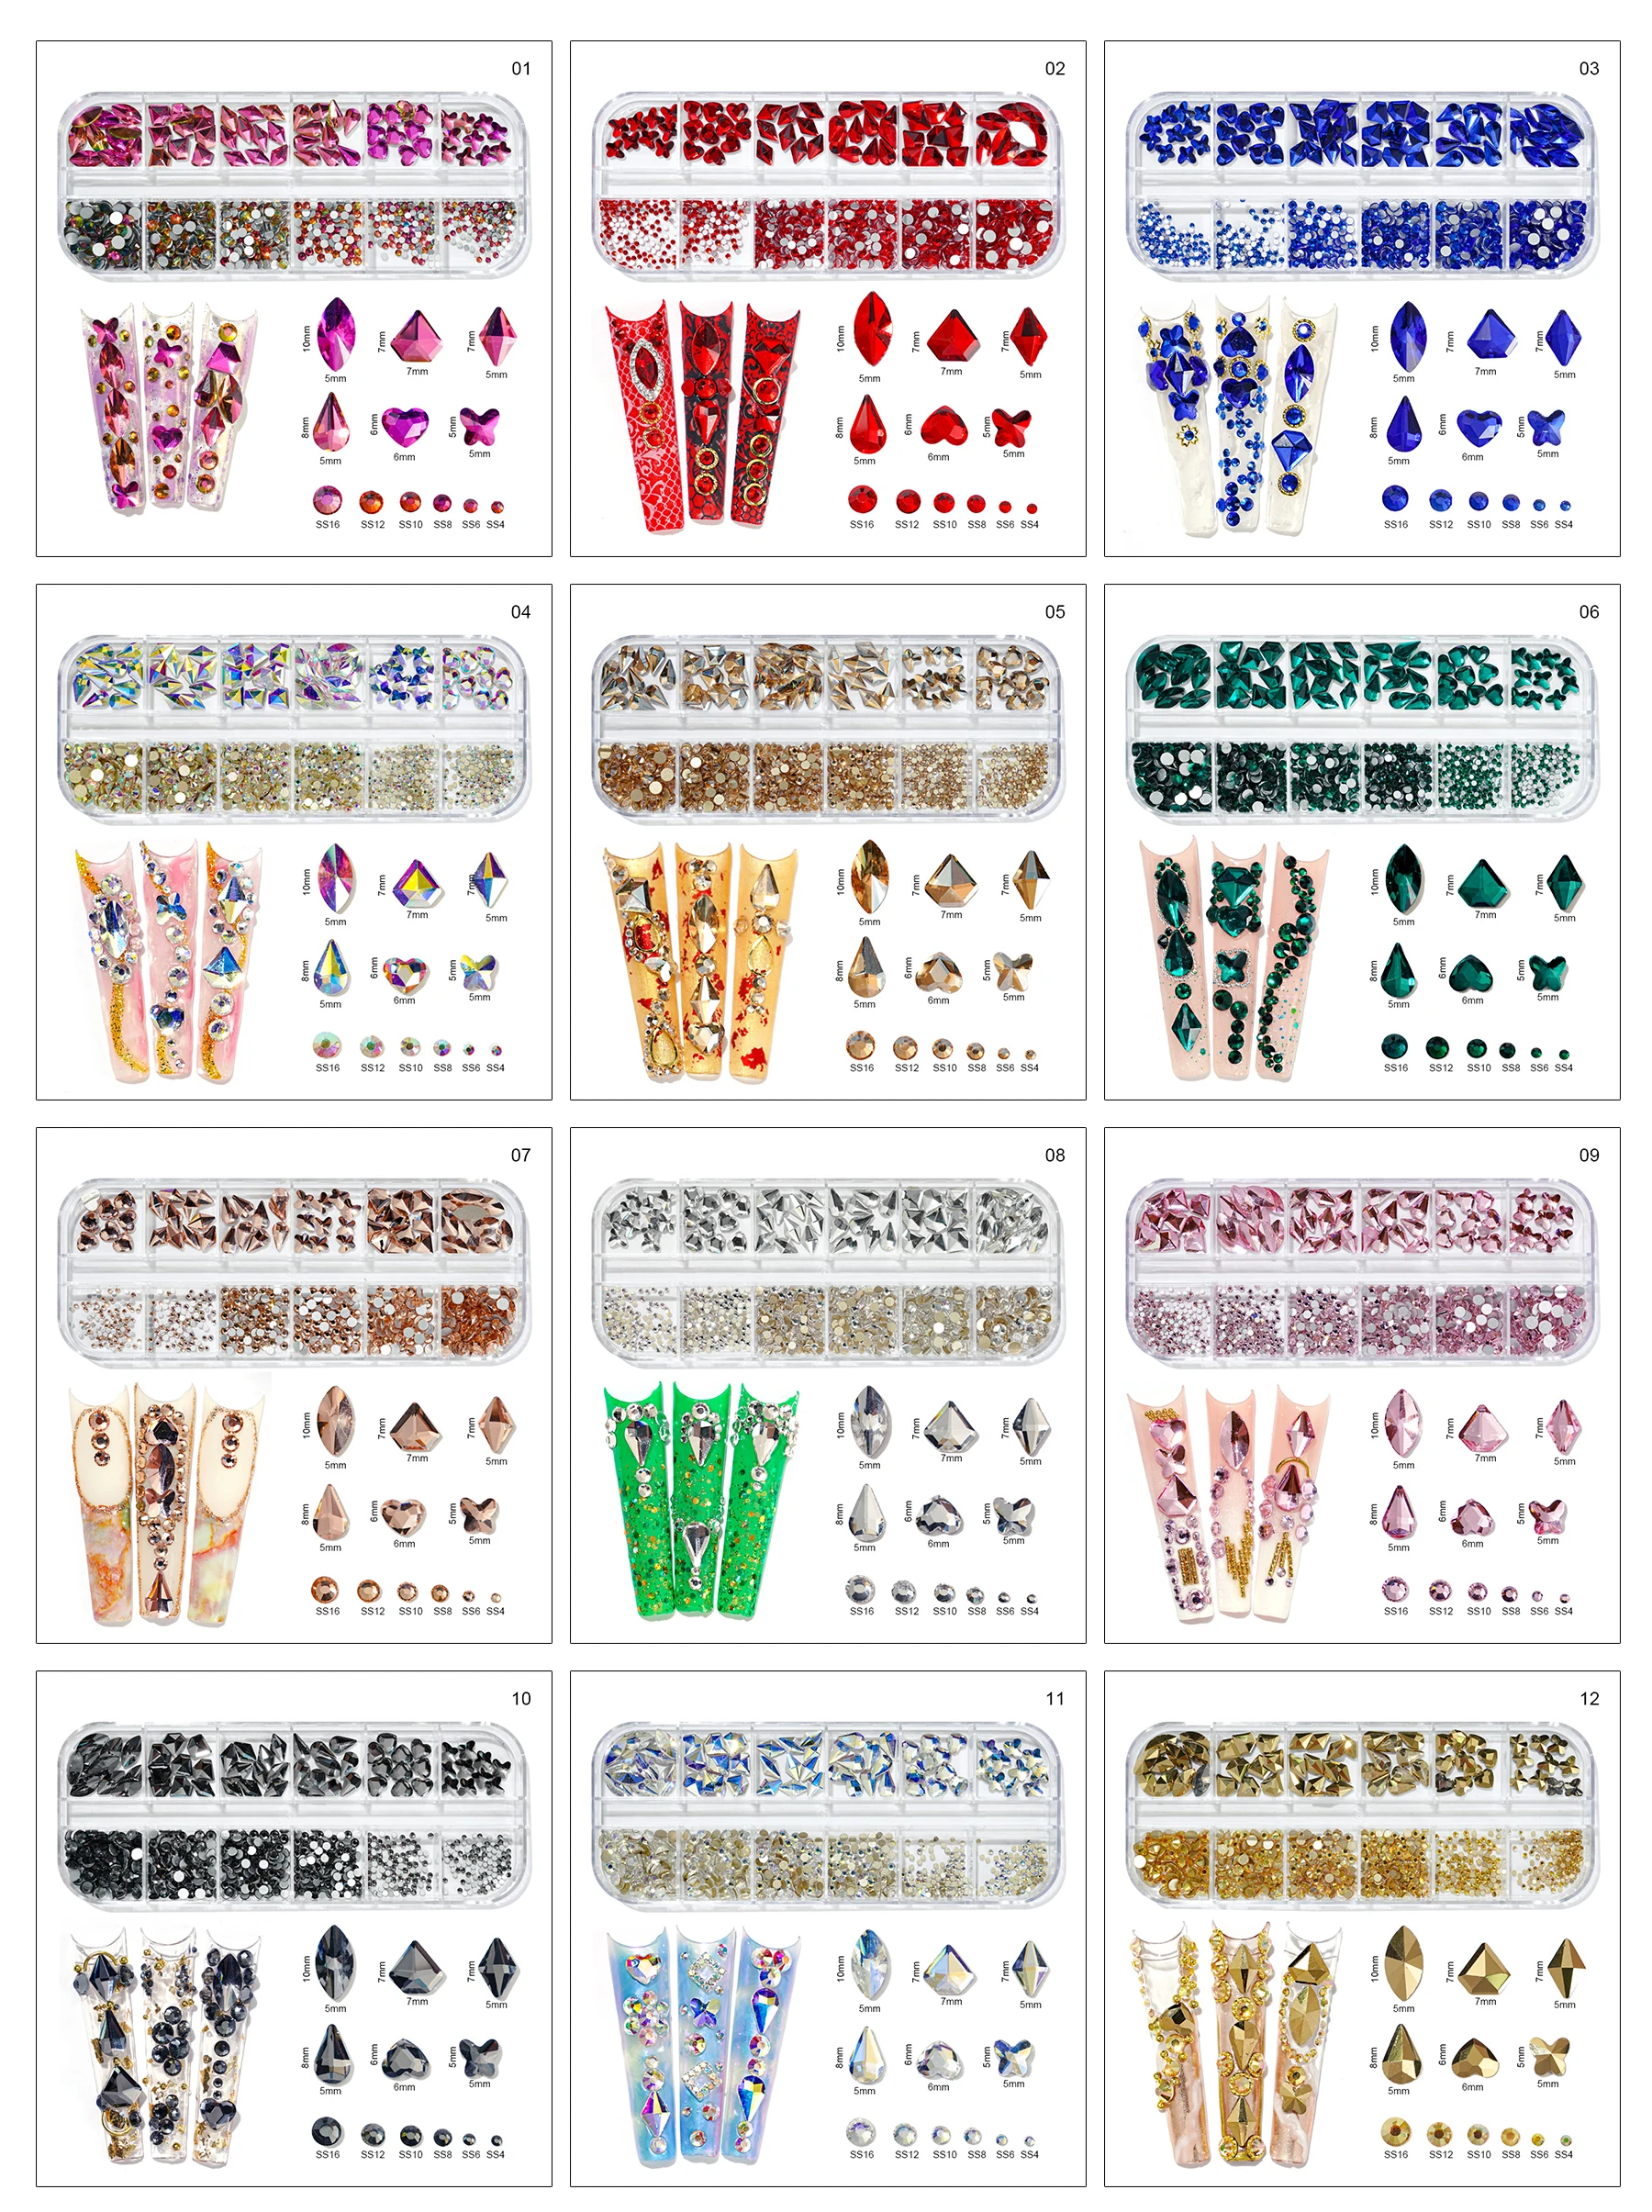 12Grid(Iga-1-Kuju)Nail Art Crystal Rhinestone,AB/Roosa/Punane...Küüned/Lapiga/Juuksed...Klaasist Pärl Kaunistused Küünte Pakkumise P406(1-9)